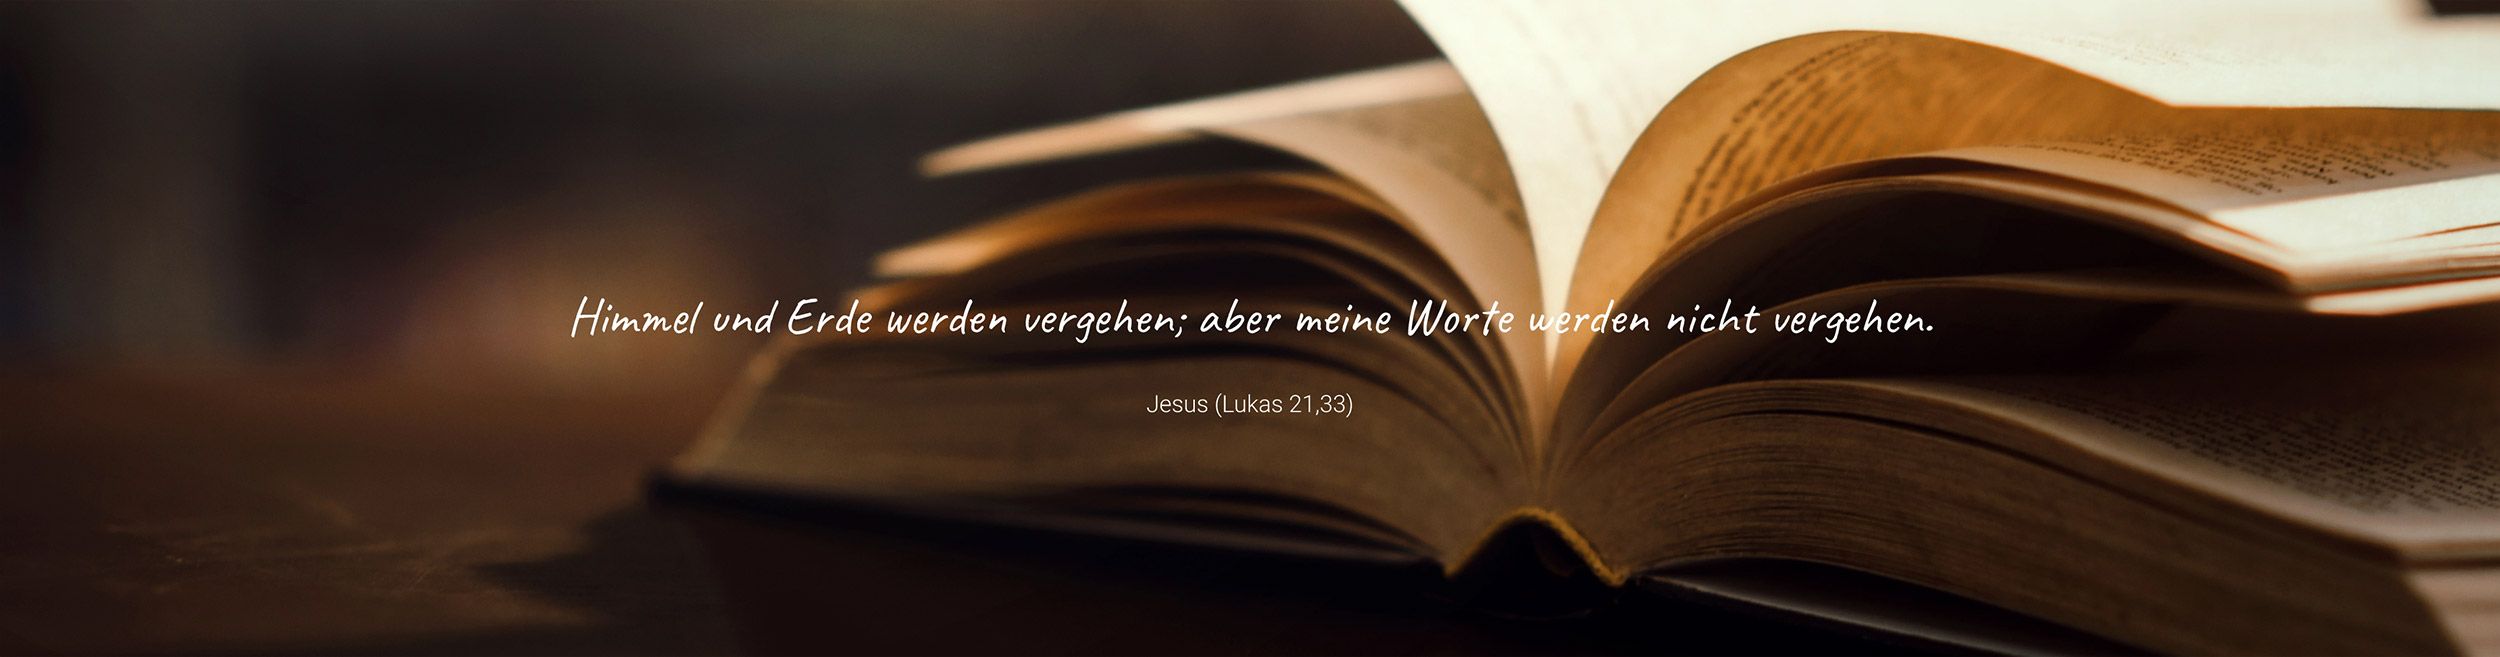 Himmel und Erde werden vergehen; aber meine Worte werden nicht vergehen. – Jesus (Lukas 21,33)